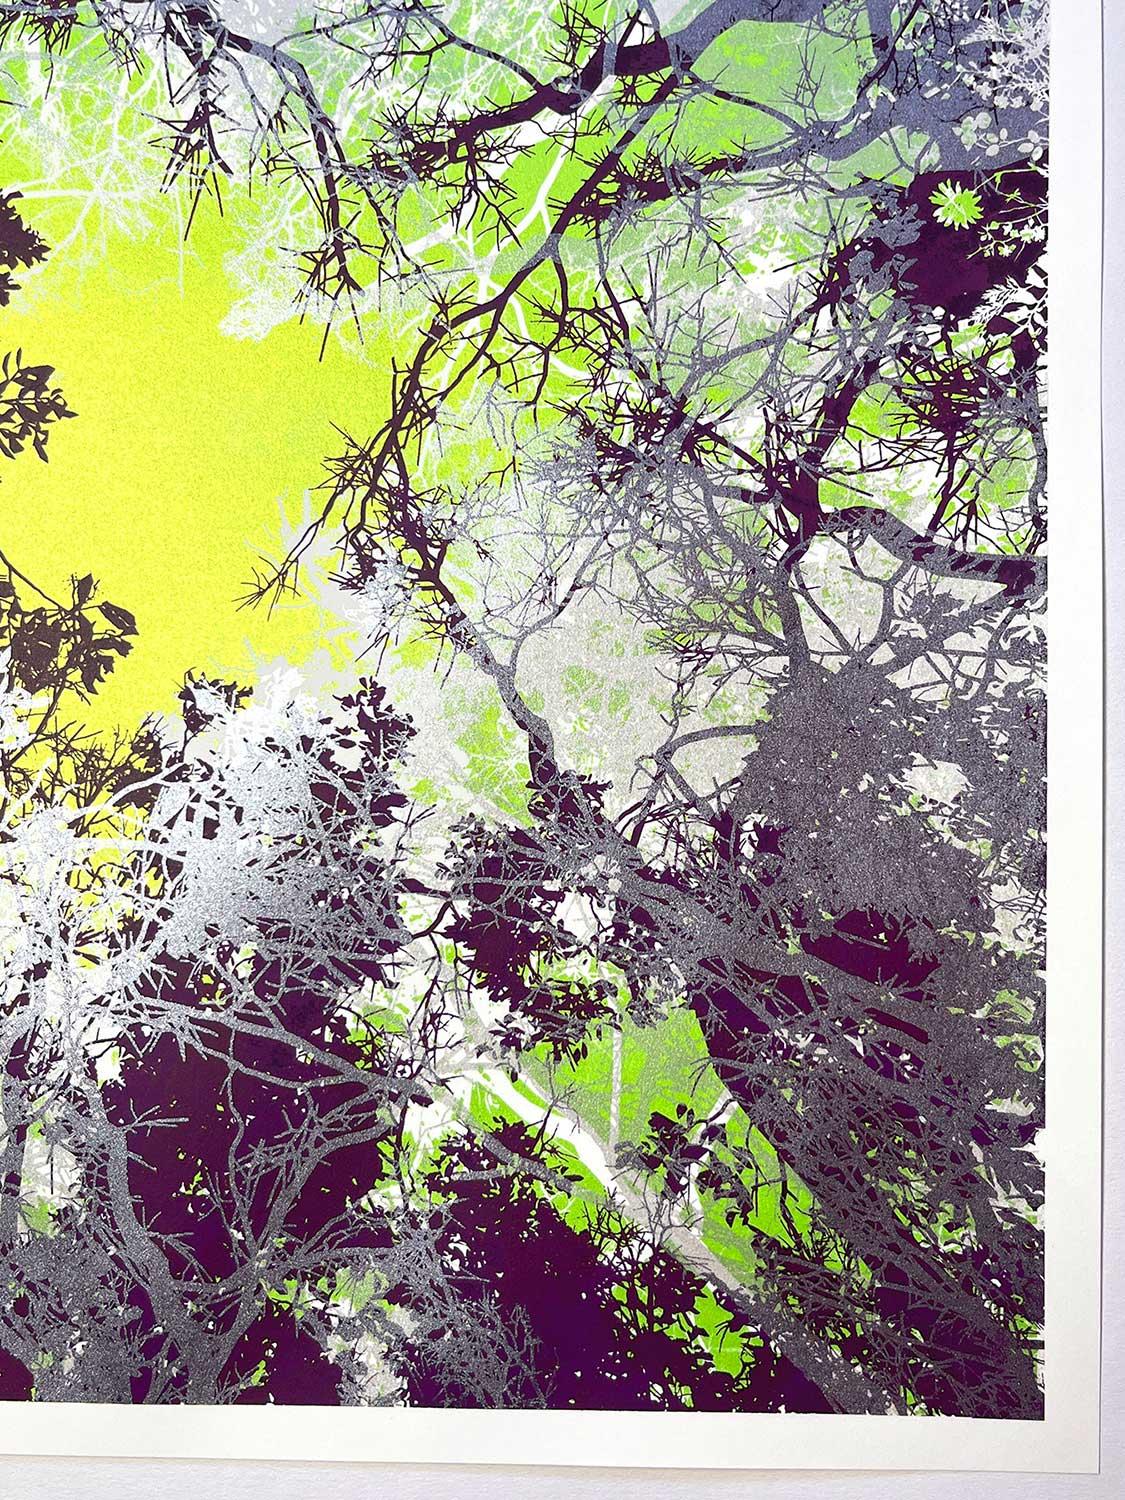 INTO THE WILD, Druck in limitierter Auflage, Wald, Neon, Grün, B&W, Baum, Metallic (Beige), Abstract Print, von Chris Keegan